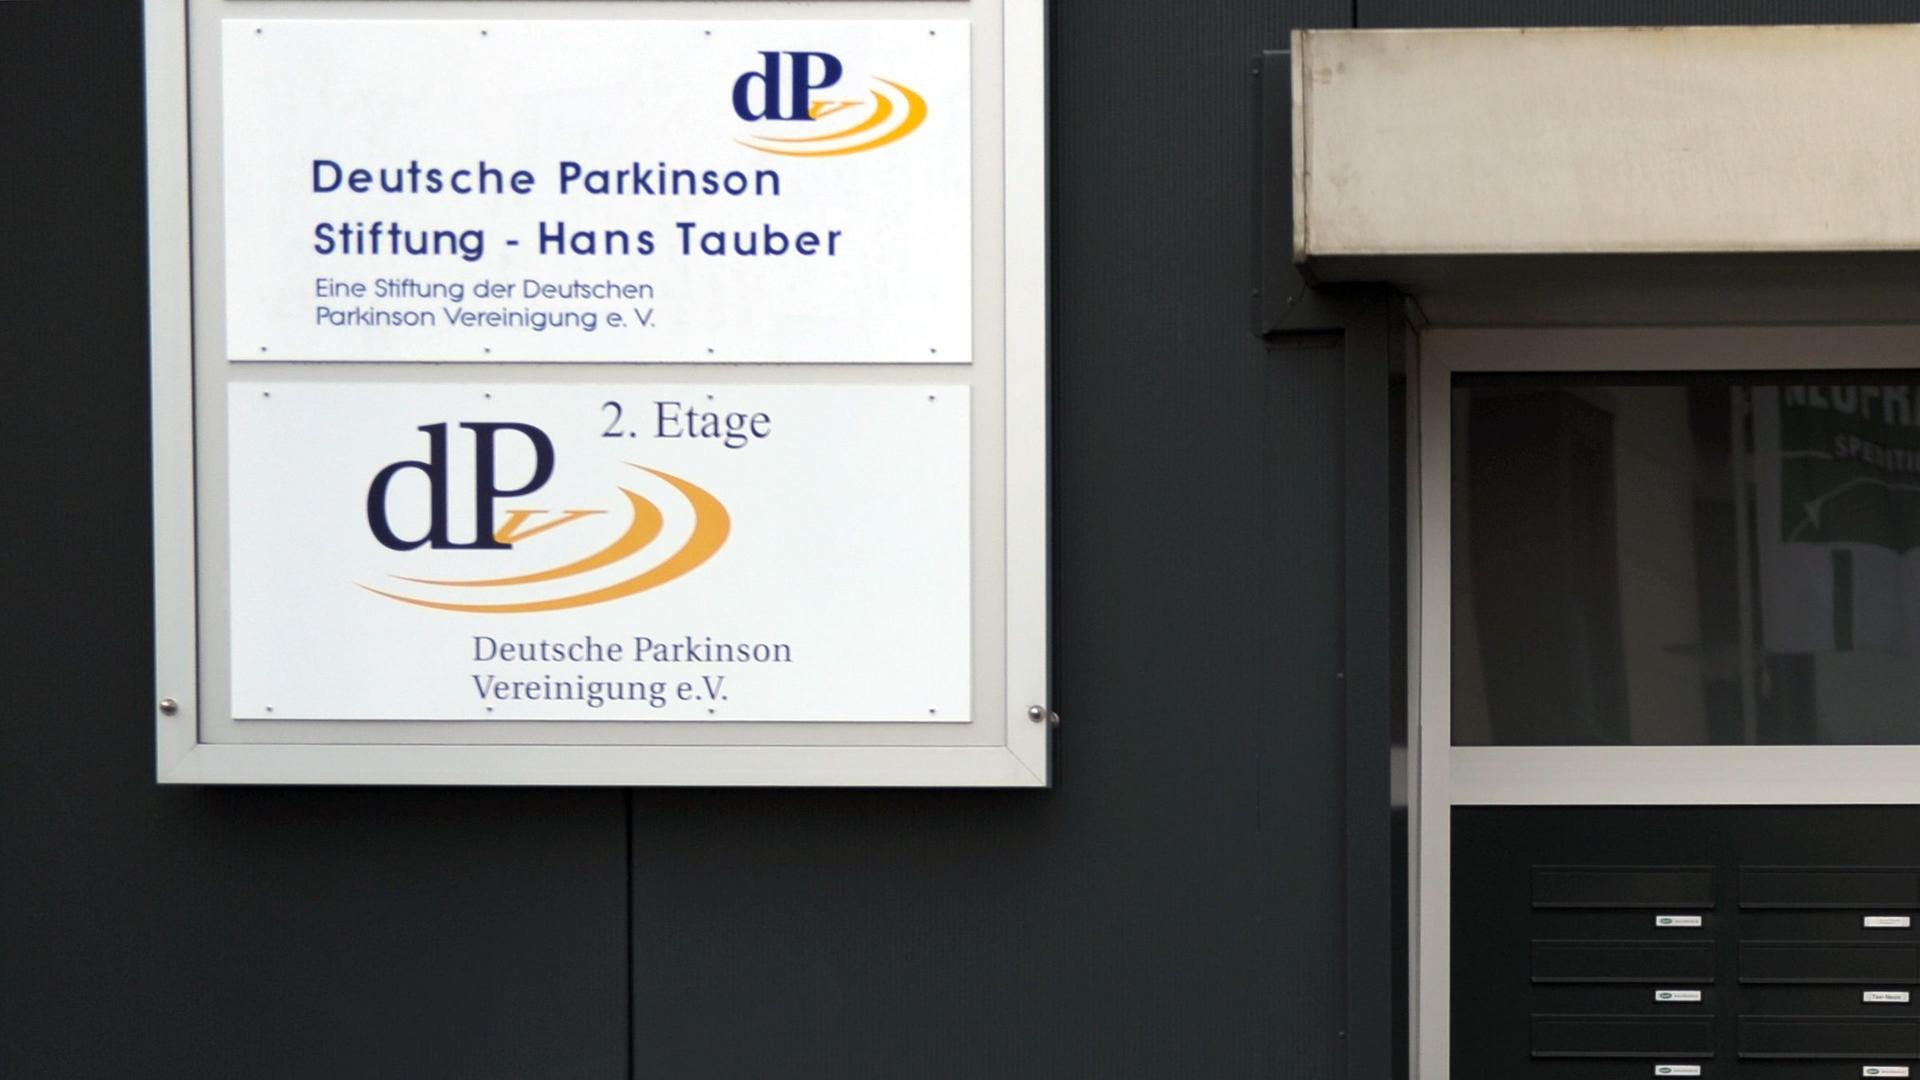 An einem Geschäftshaus in Neuss hängen die Schilder der Deutschen Parkinson Vereinigung e.V und der Hans-Tauber-Stifung der Deutschen Parkinson Vereinigung (dPV).